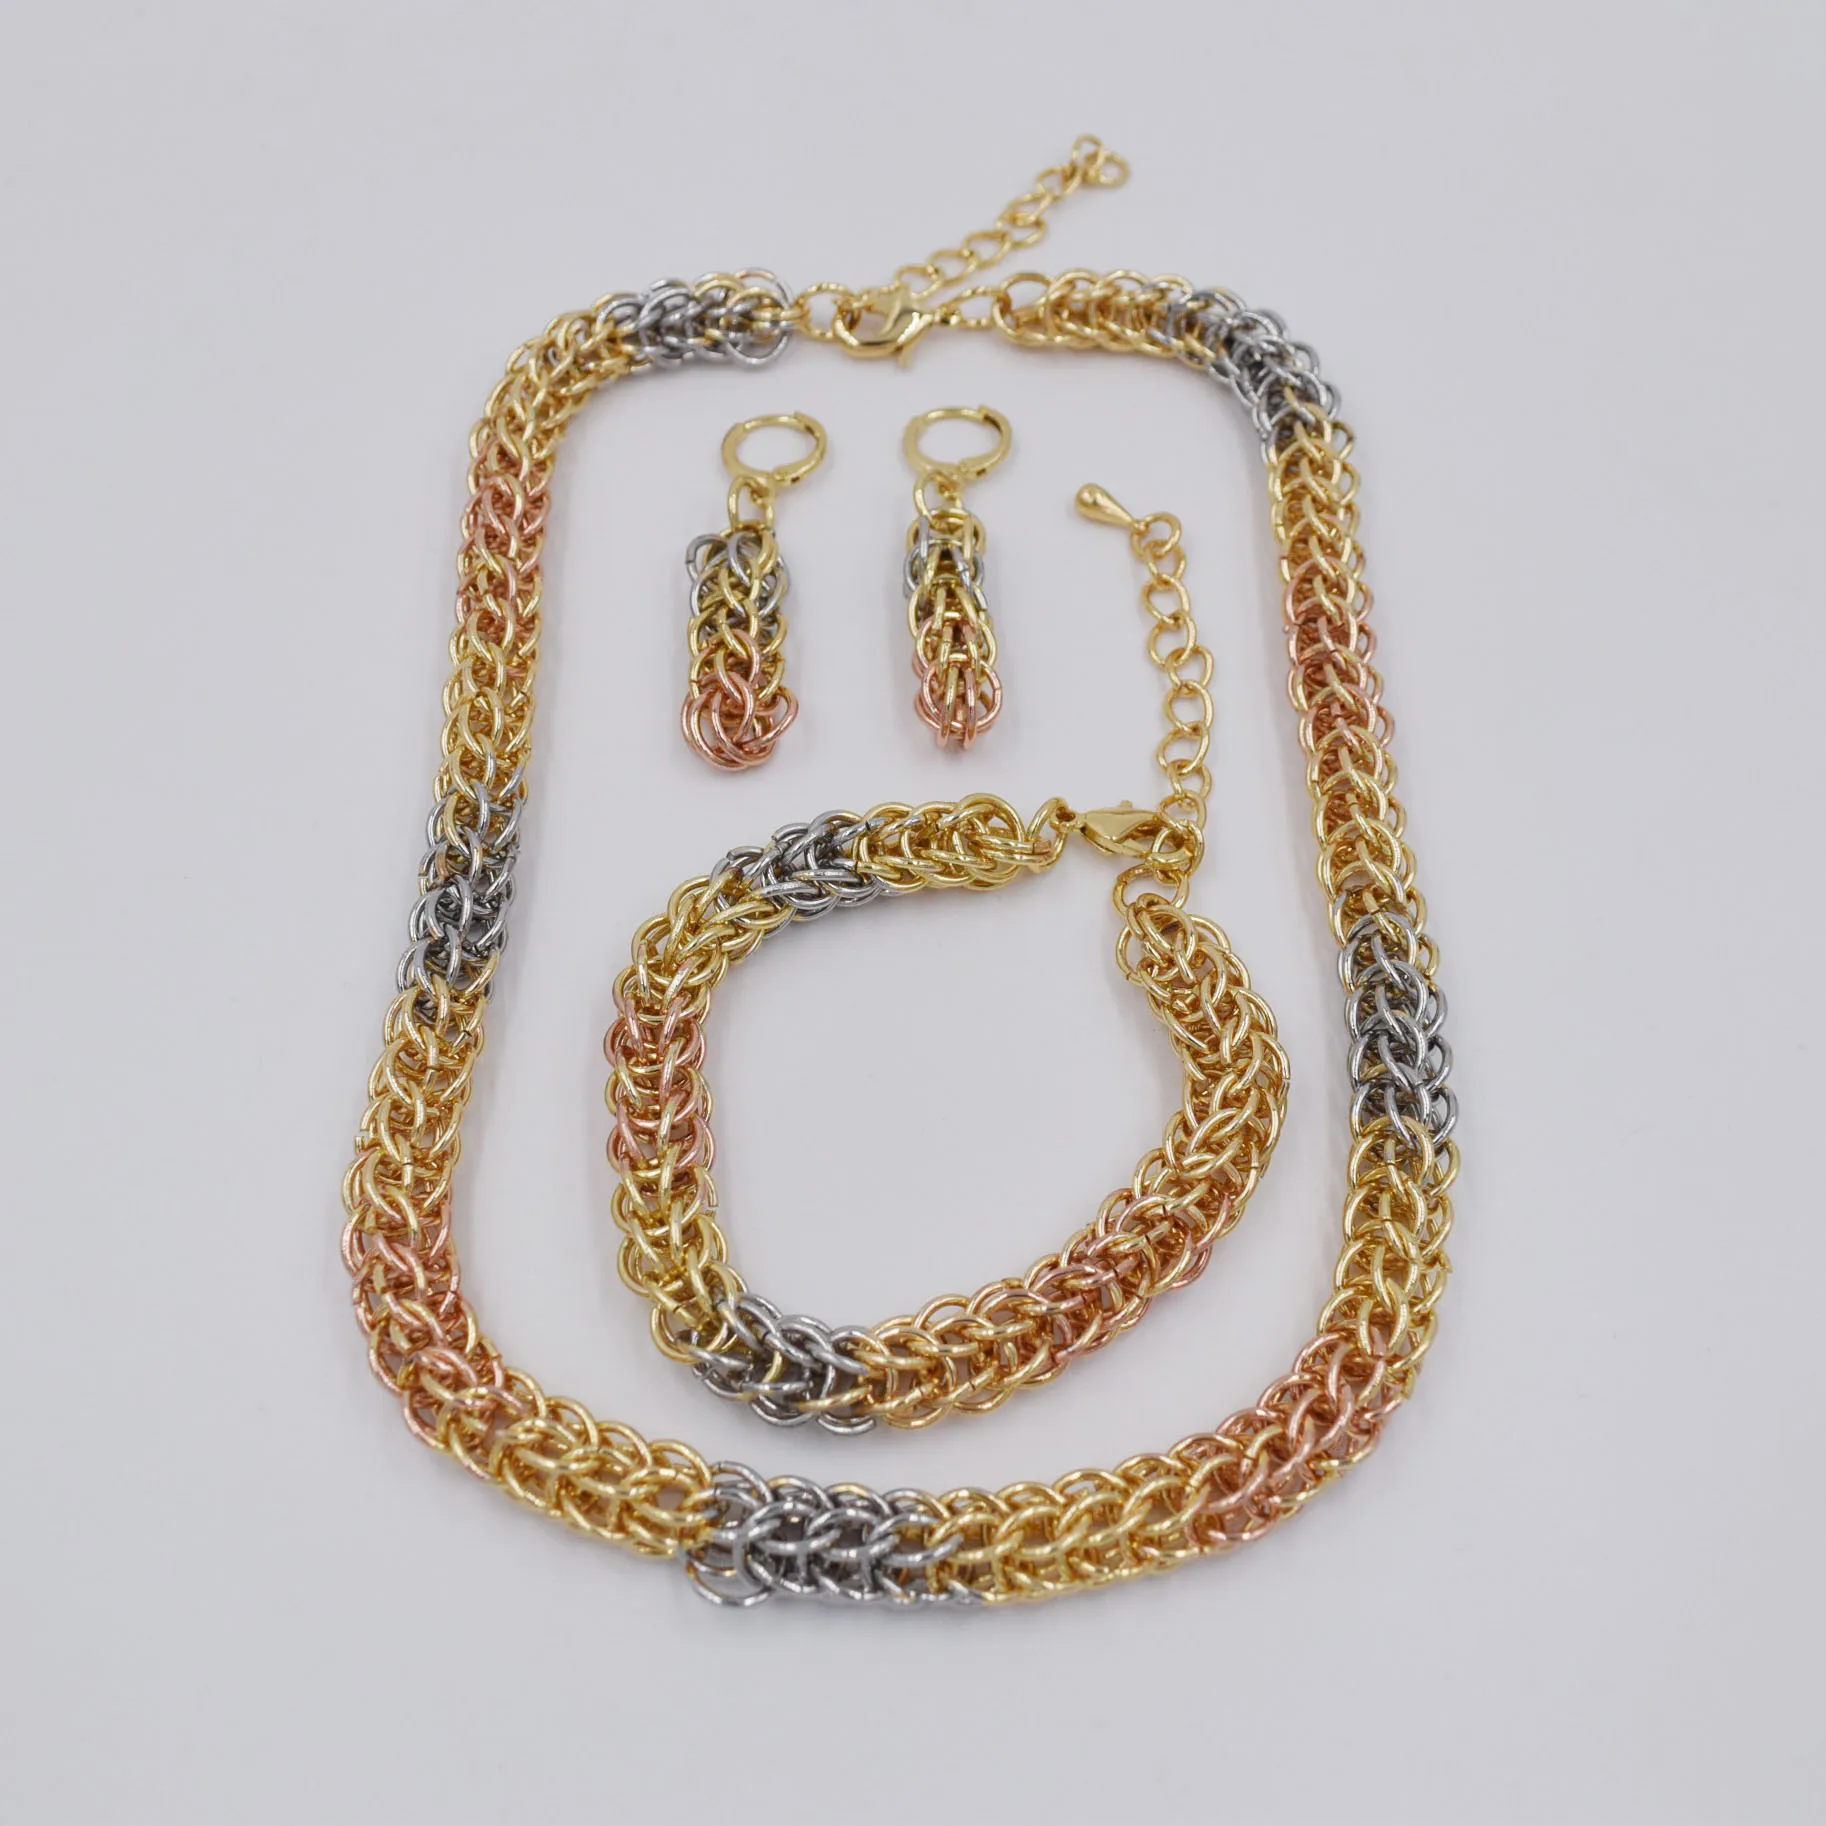 Высокое качество Дубай 3 цвета золотой цвет набор украшений для женщин африканские бусы ювелирные изделия ожерелье набор серьги ювелирные ... от AliExpress WW